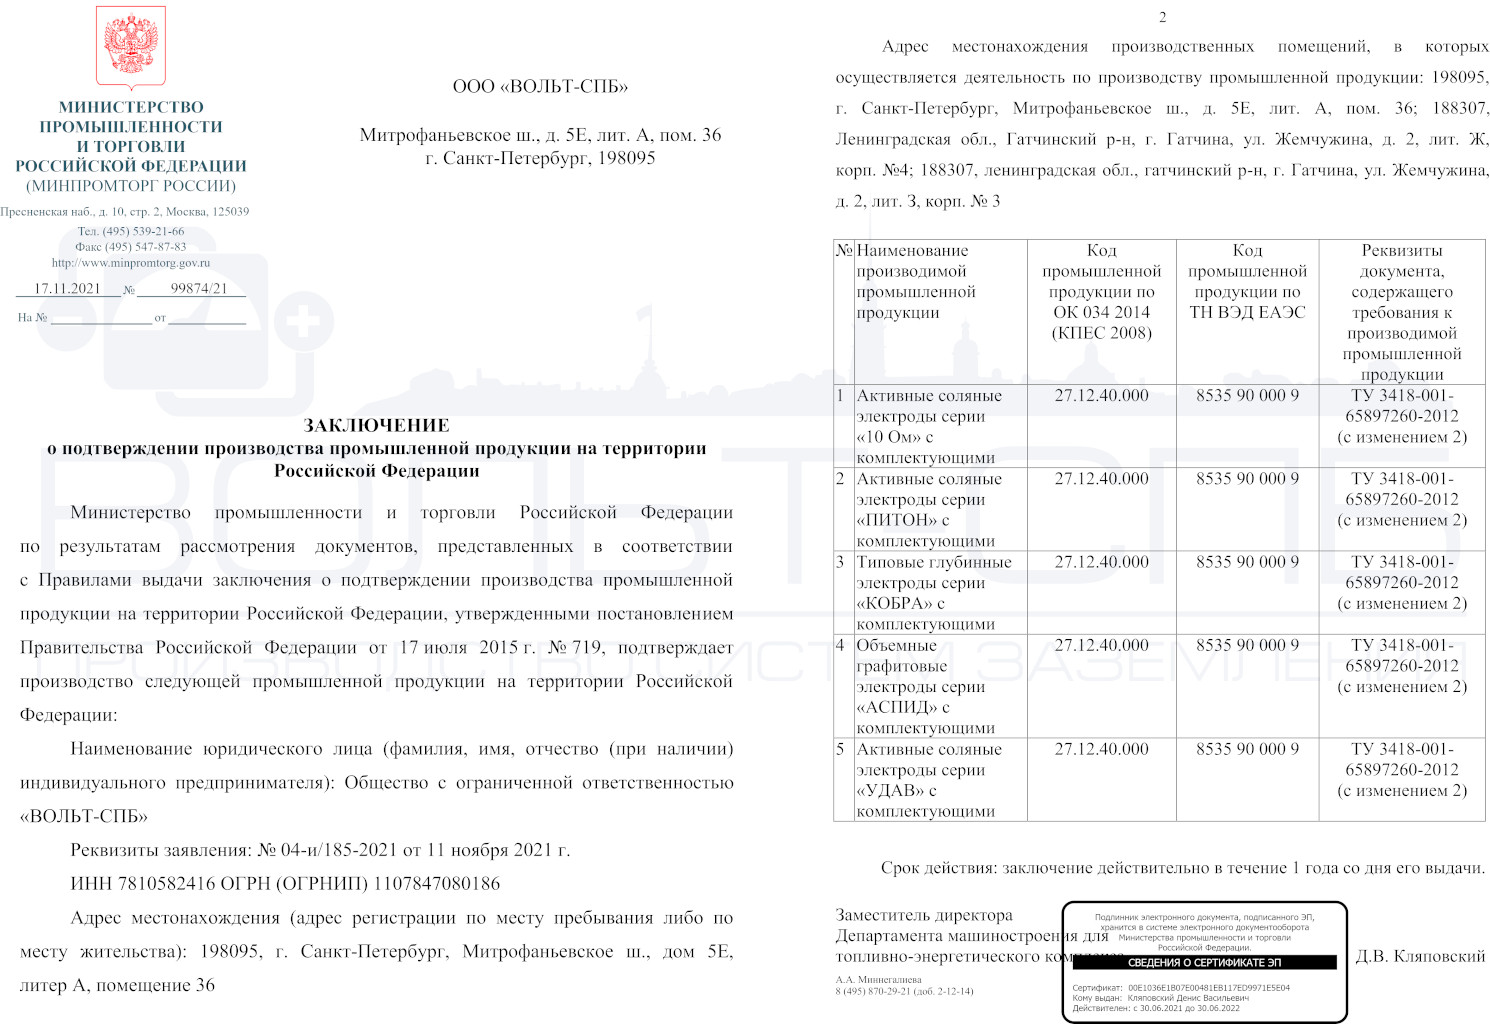 Заключение МИНПРОМТОРГа о подтверждении производства промышленной продукции на территории РФ